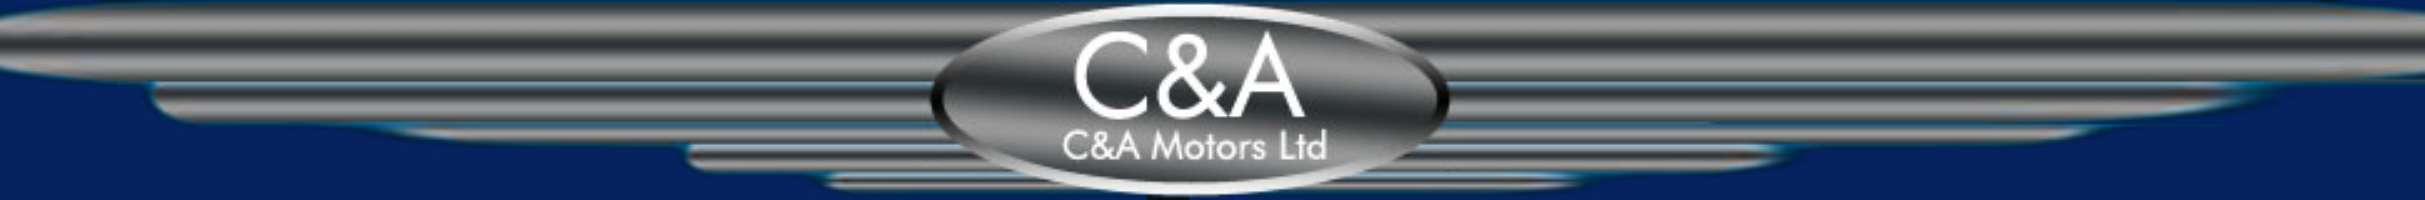 C & A Motors Limited Photo